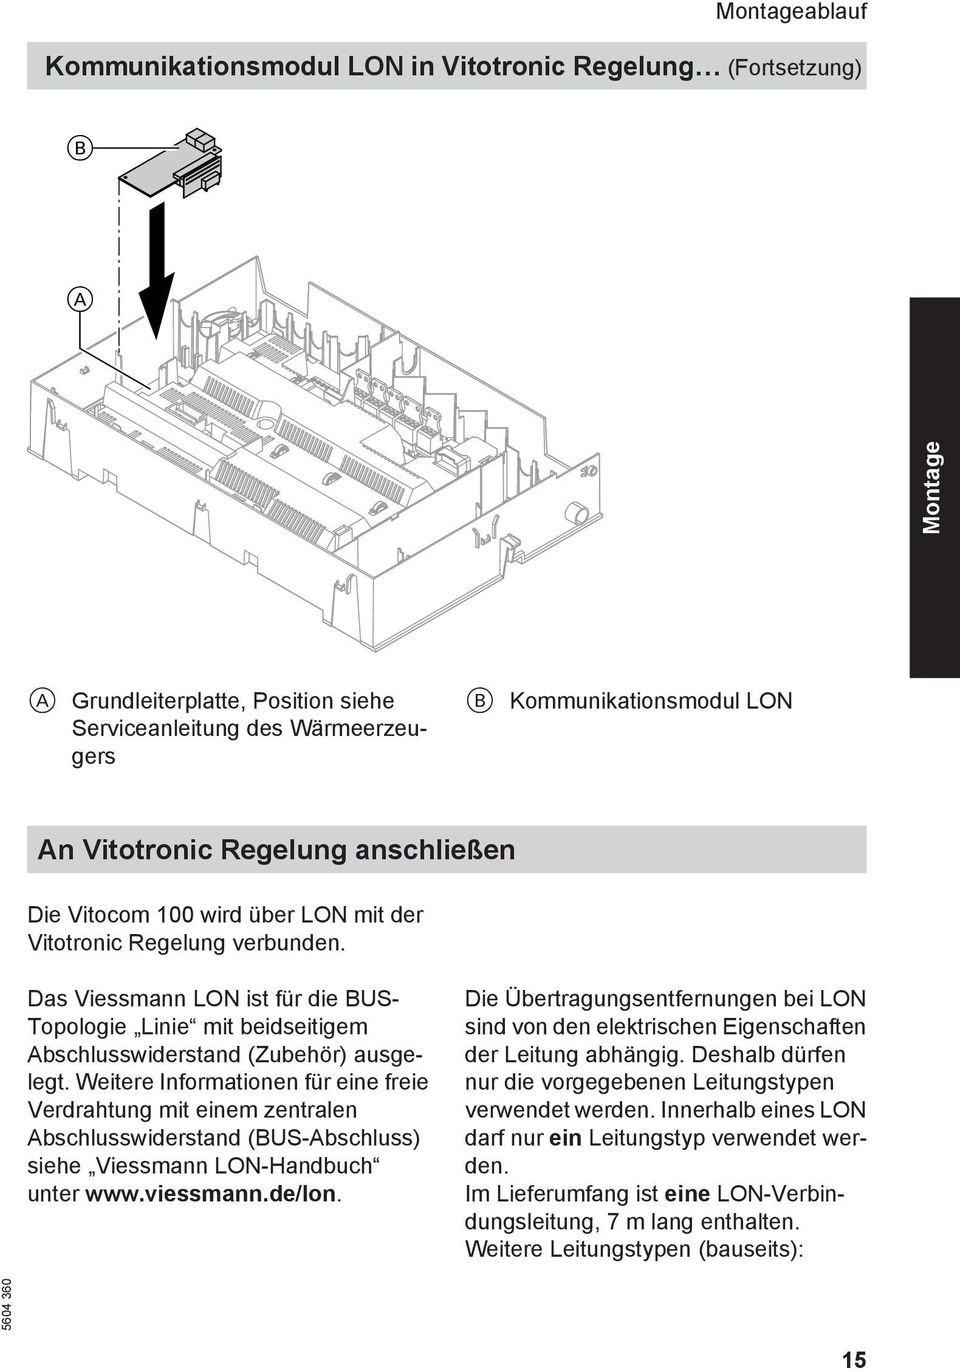 Weitere Informationen für eine freie Verdrahtung mit einem zentralen Abschlusswiderstand (BUS-Abschluss) siehe Viessmann LON-Handbuch unter www.viessmann.de/lon.